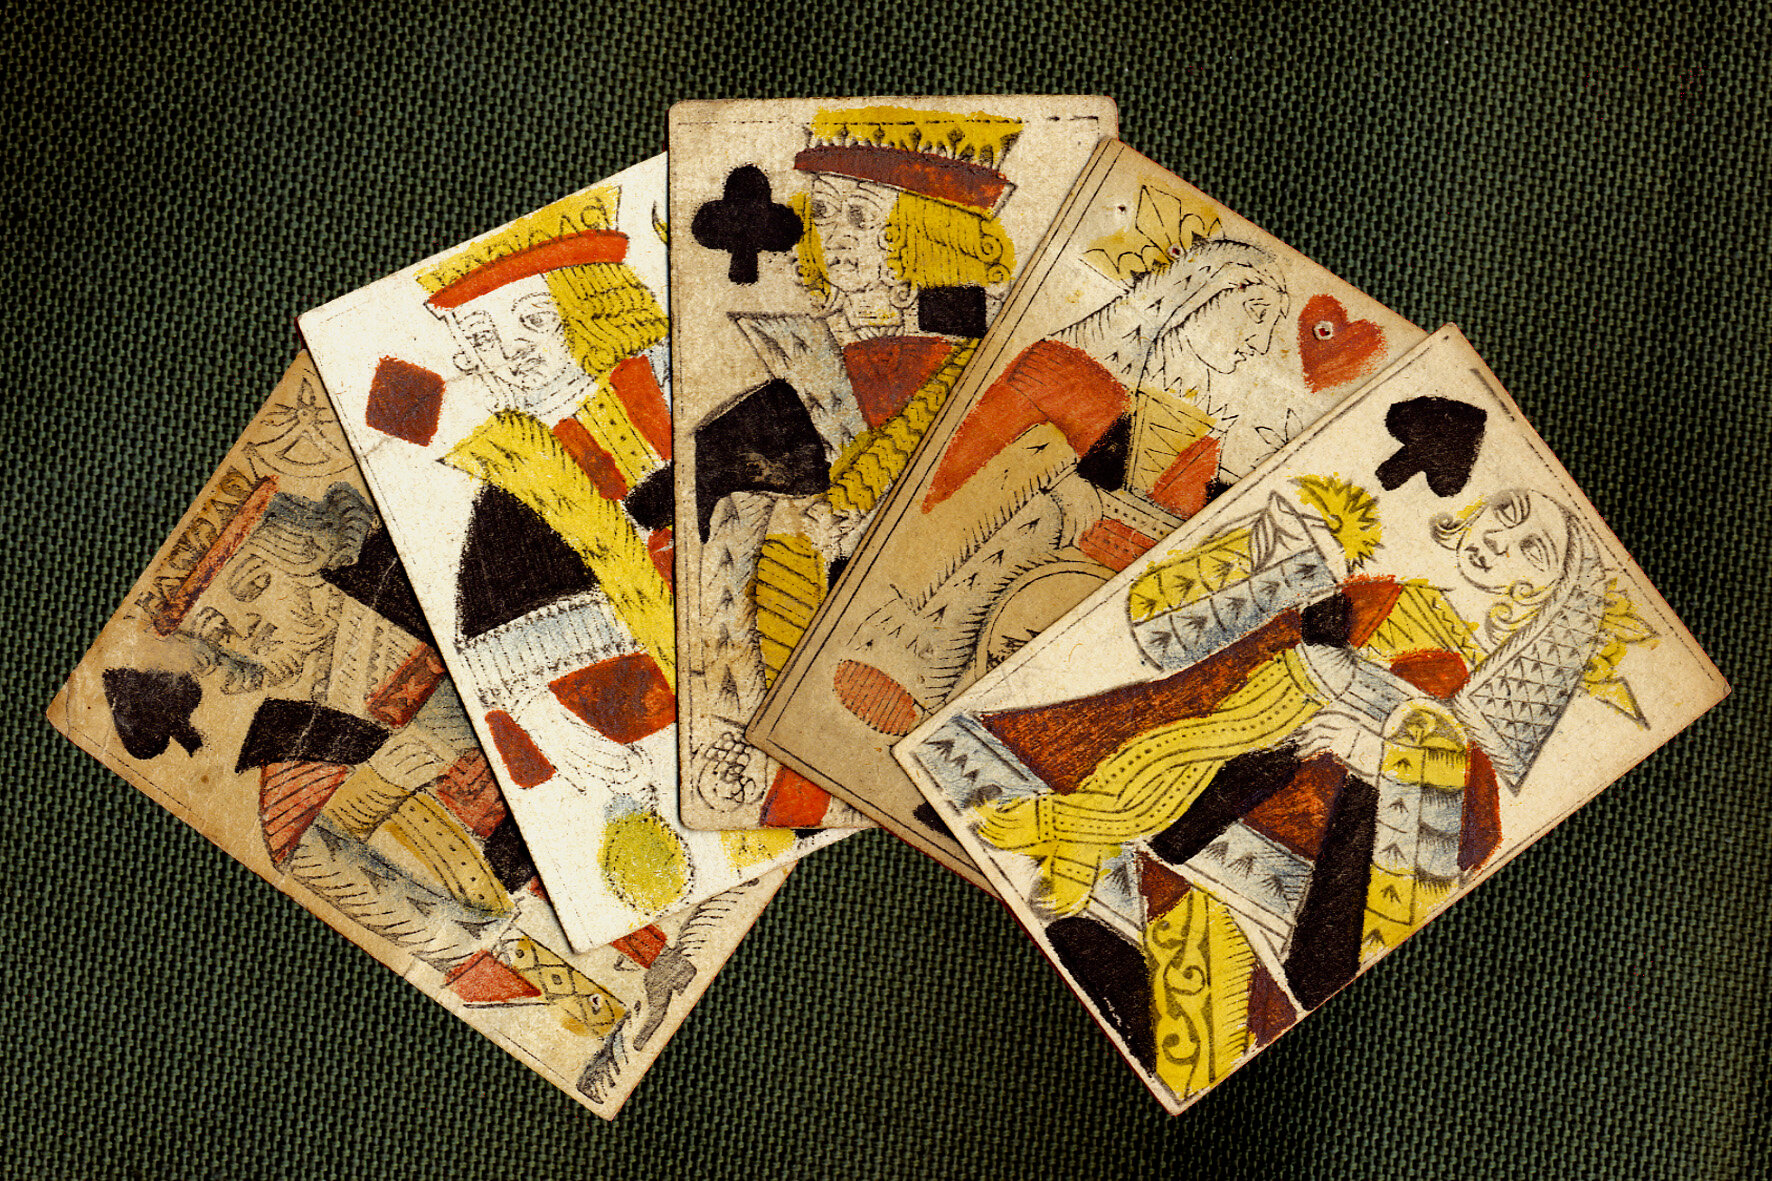 Les cartes à jouer : histoire et évolutions